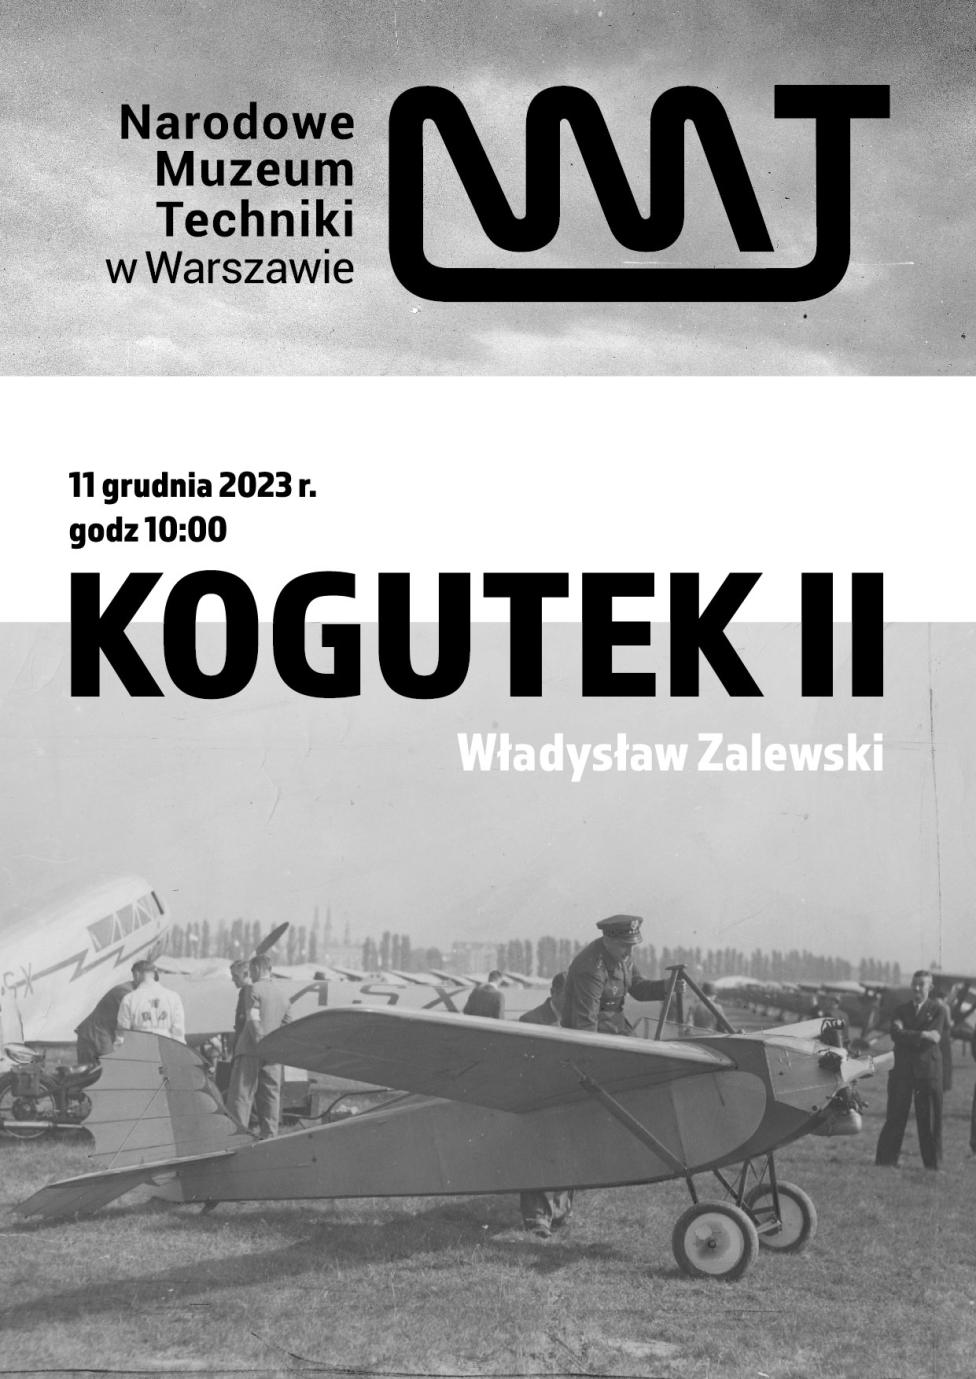 Samolot WZ-XII Kogutek II - spotkanie w Narodowym Muzeum Techniki w Warszawie (fot. Narodowym Muzeum Techniki w Warszawie)